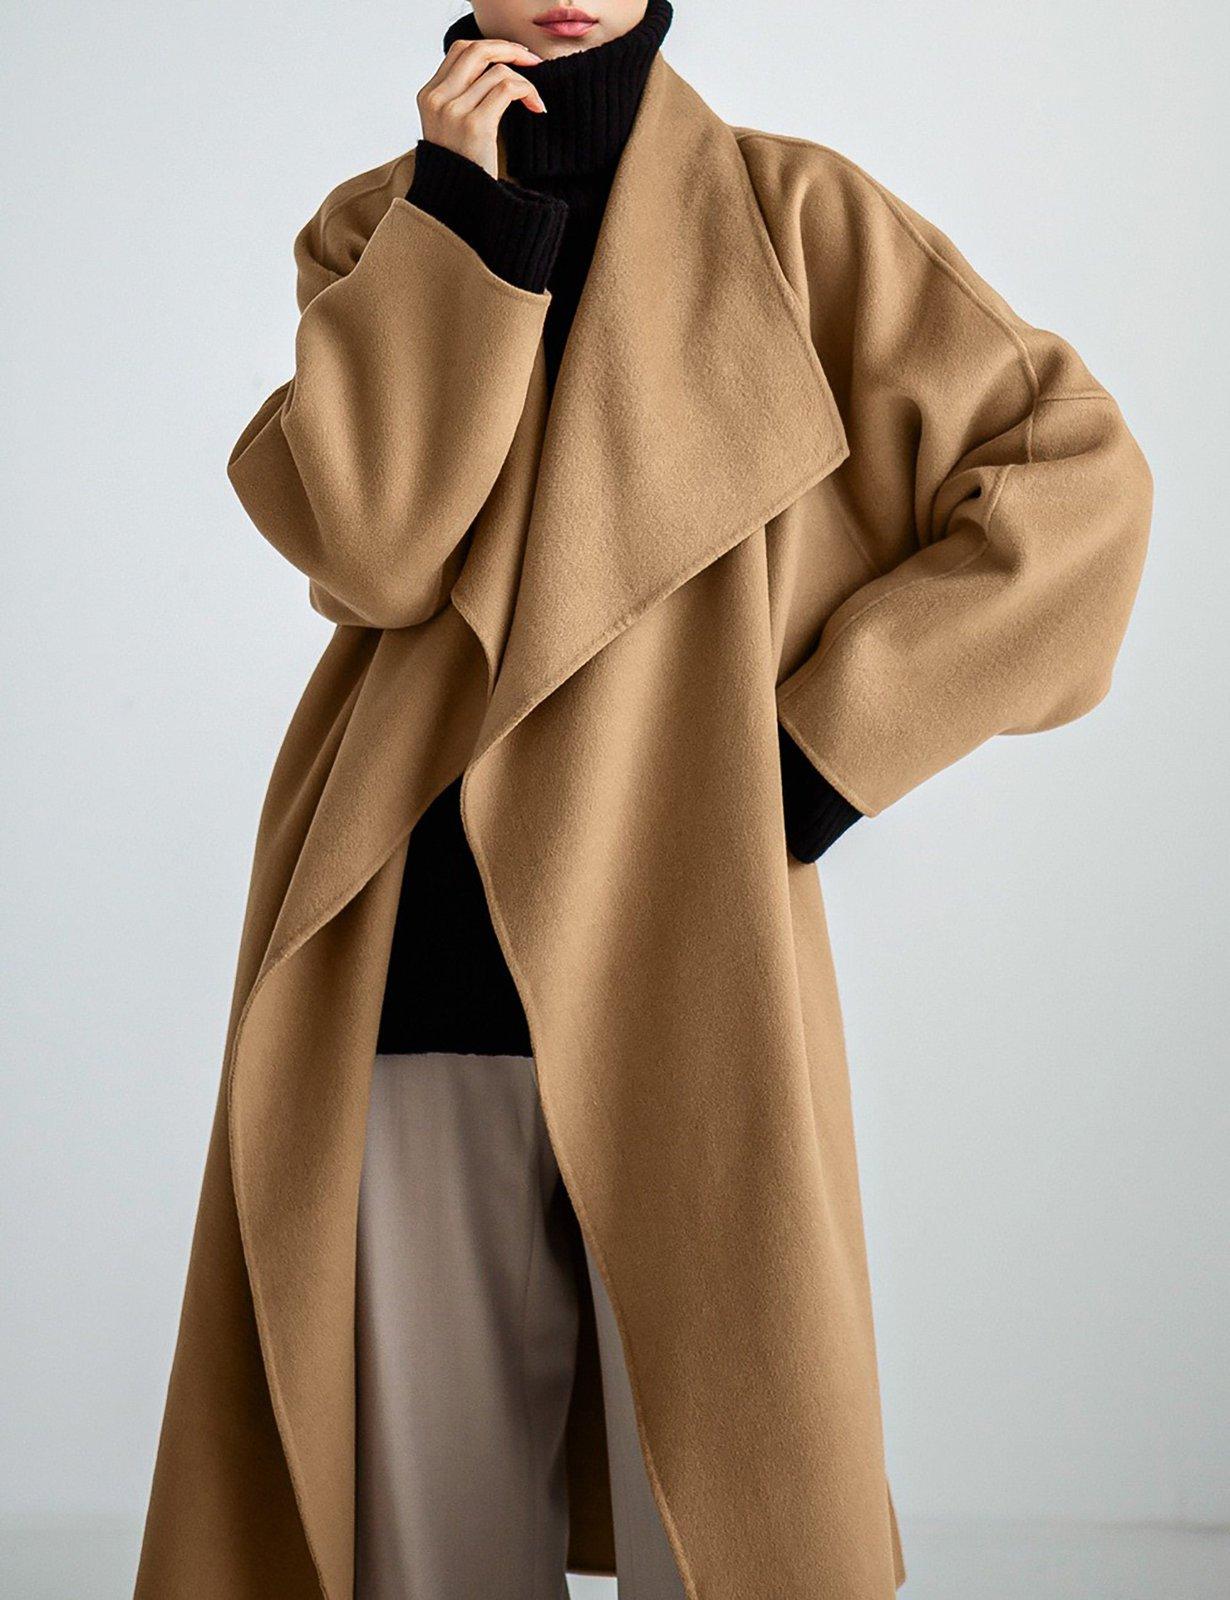 Norwegian Wool Women's Wool-Blend Down Hooded Wrap Coat - Camel - Size Large